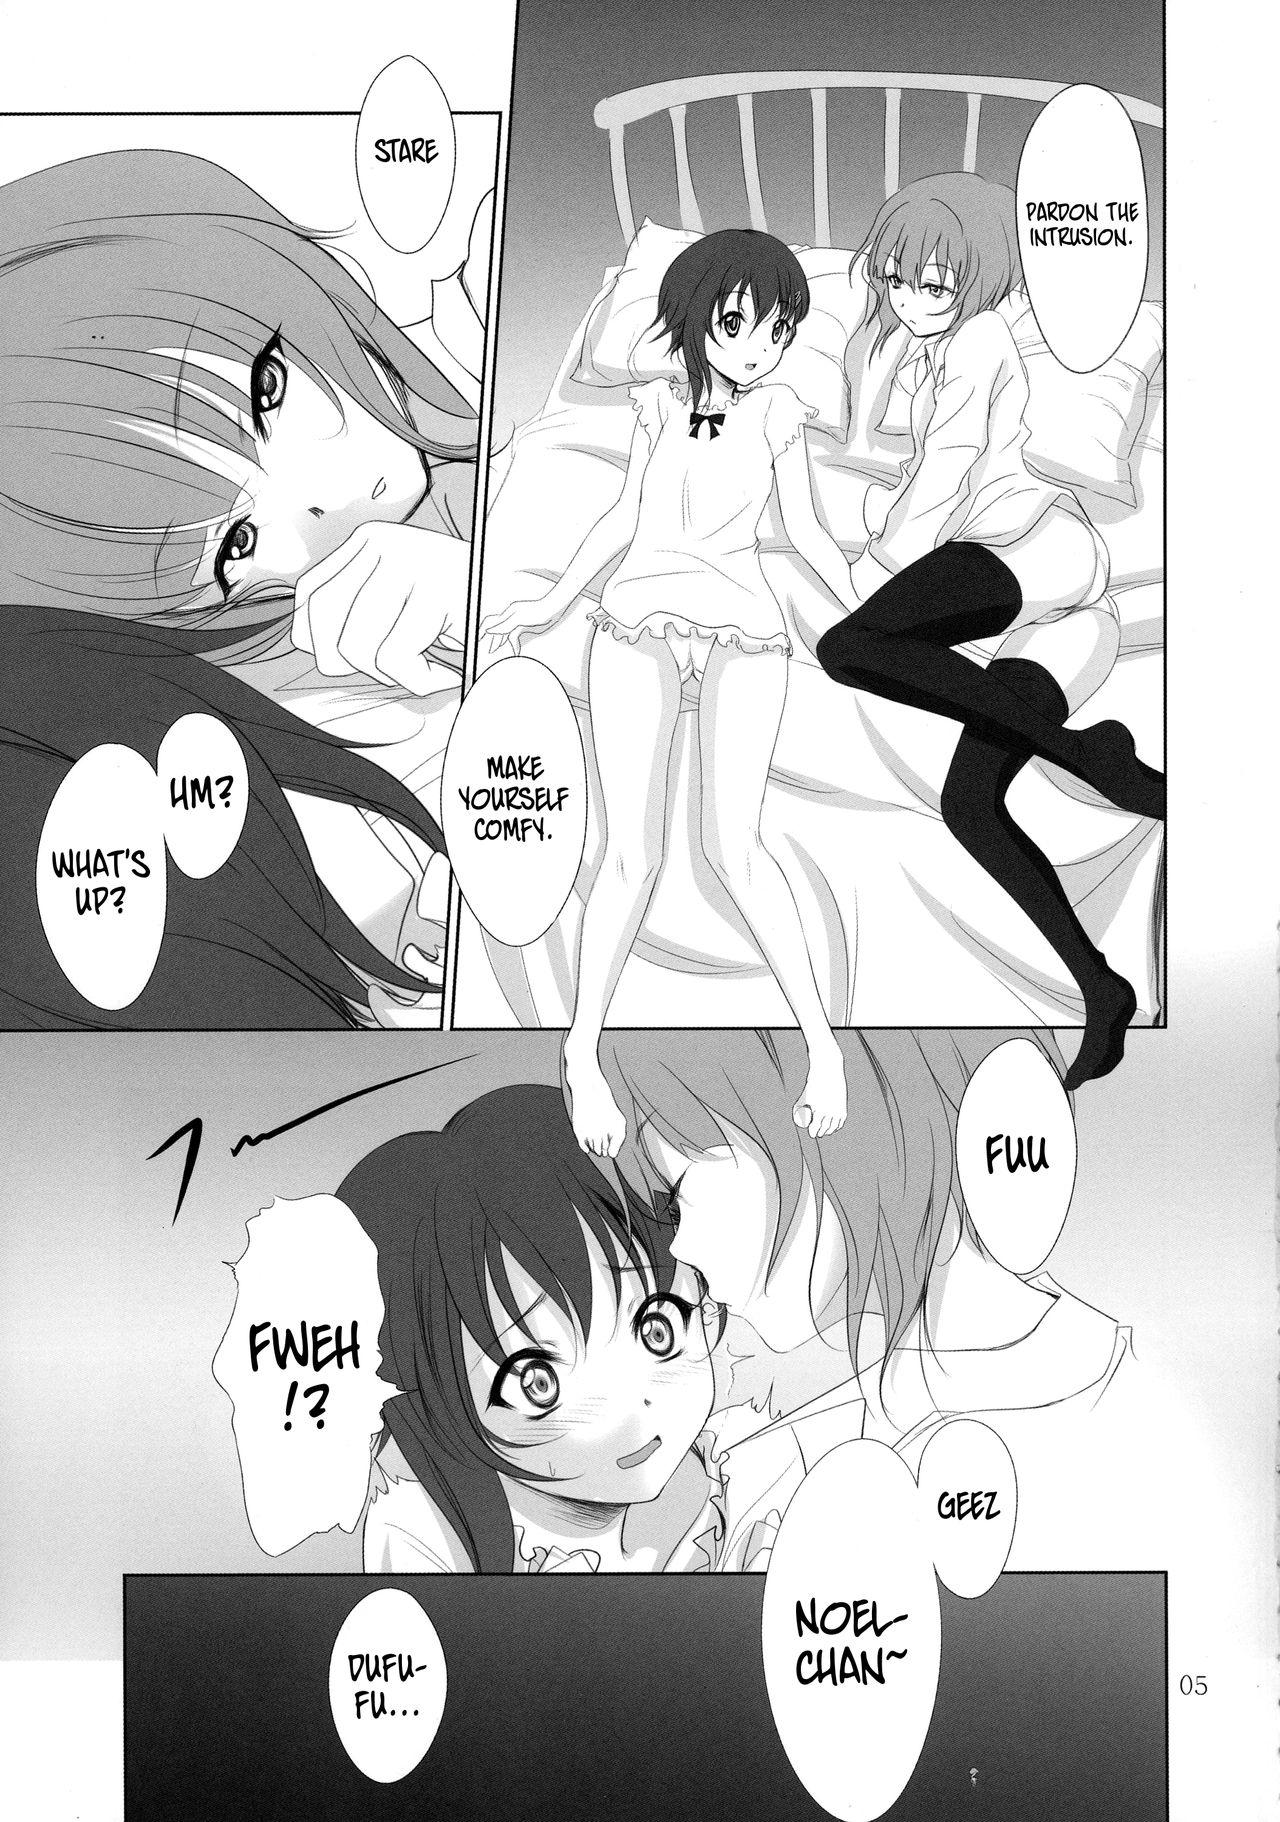 Dando Kananoe! - Sora no woto 18 Year Old Porn - Page 5